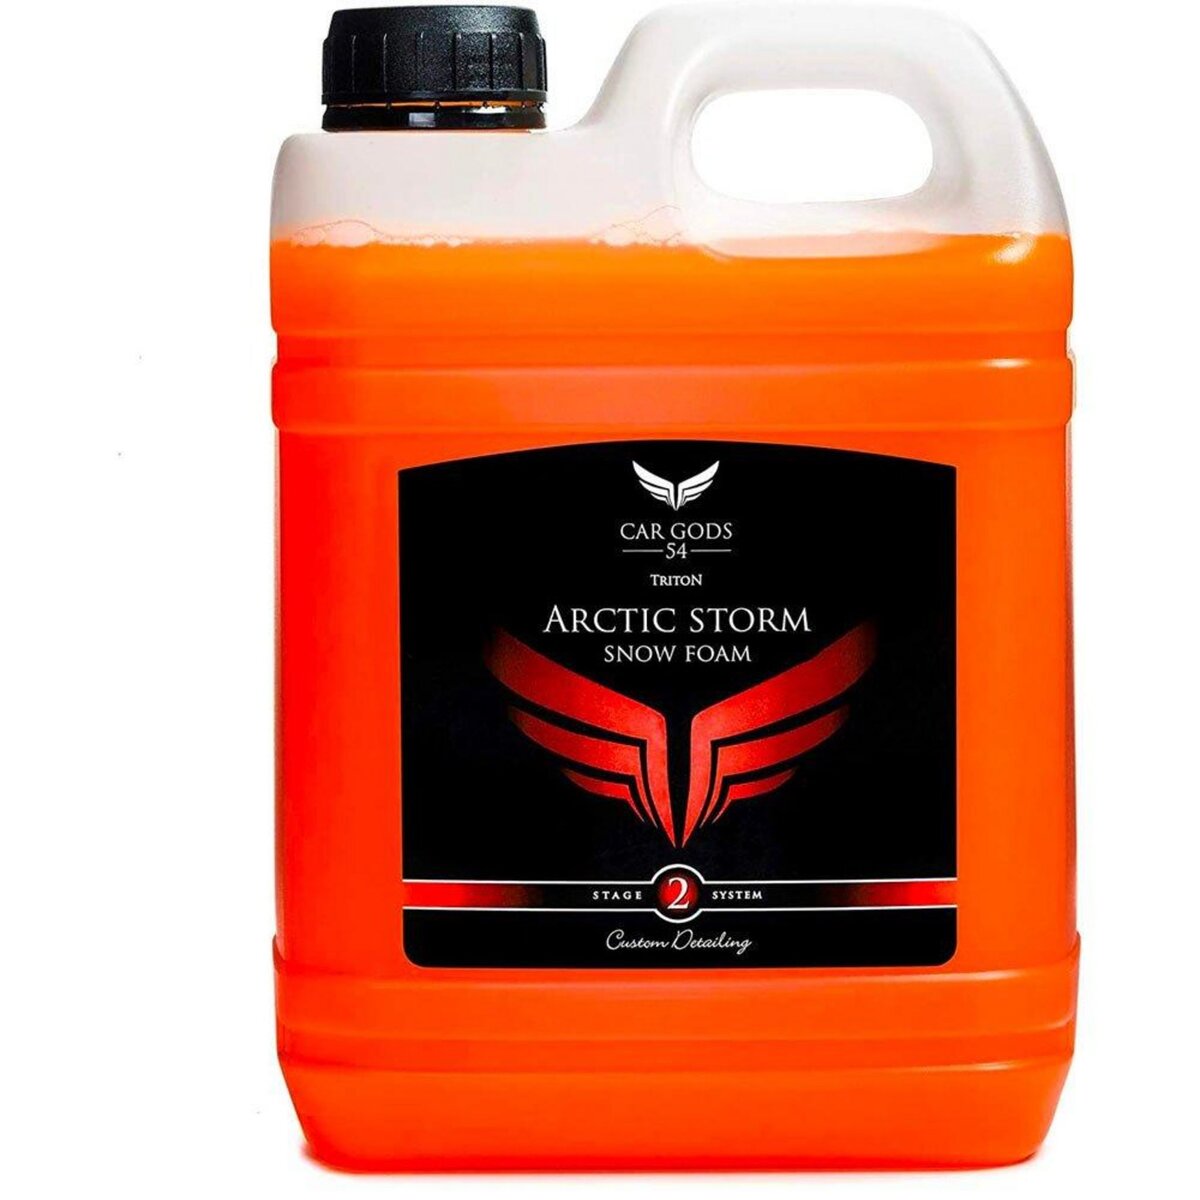  Car Gods Triton - Shampooing Ultra-Moussant pour Carrosserie Parfum Orange Sanguine 2.5L